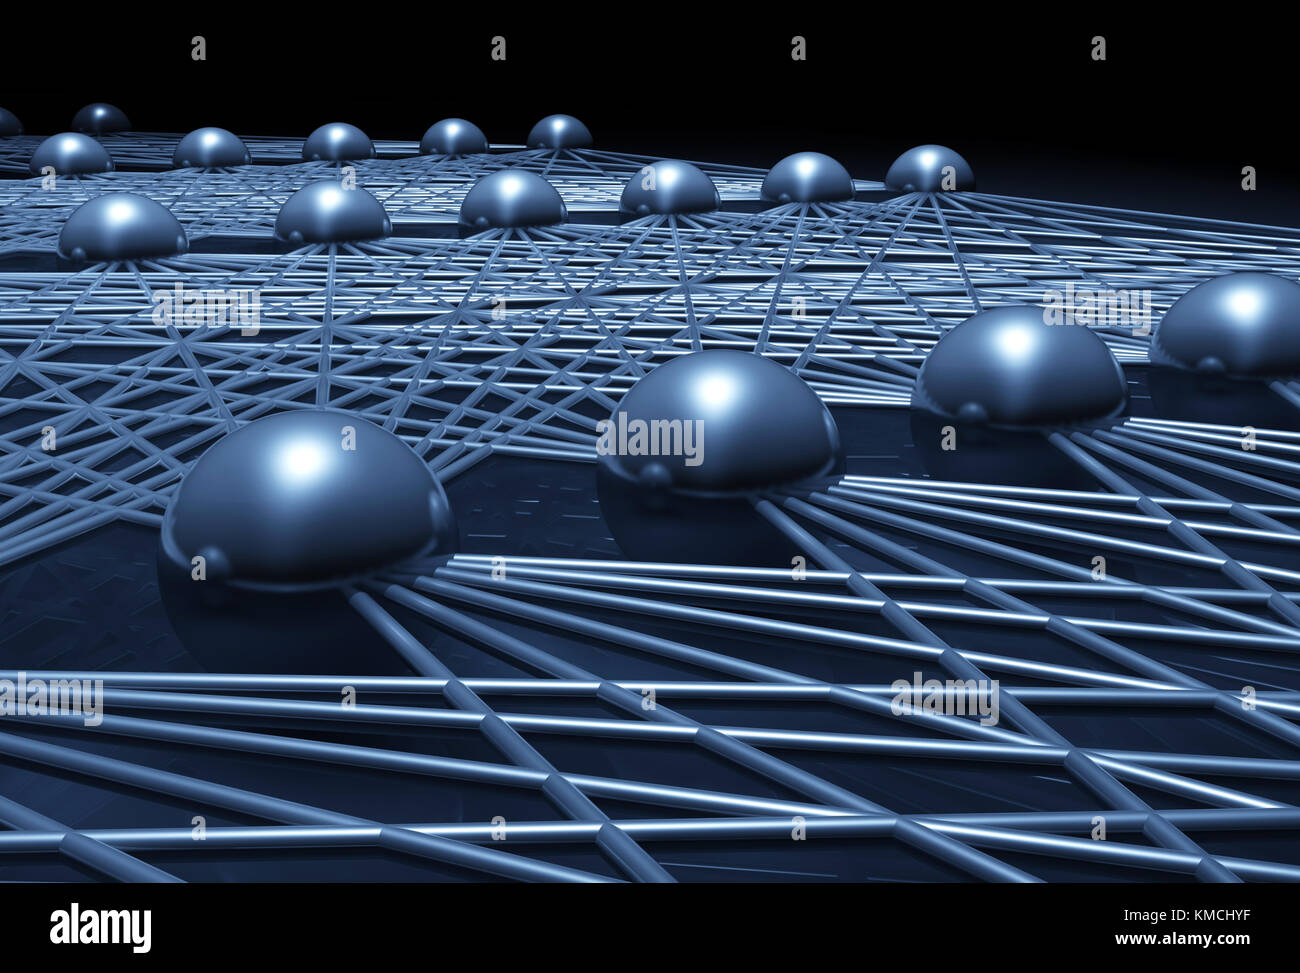 Künstliche neuronale Netzstruktur Fragment, cg Abbildung mit Schaltplan blau Modell, 3D-Rendering Stockfoto